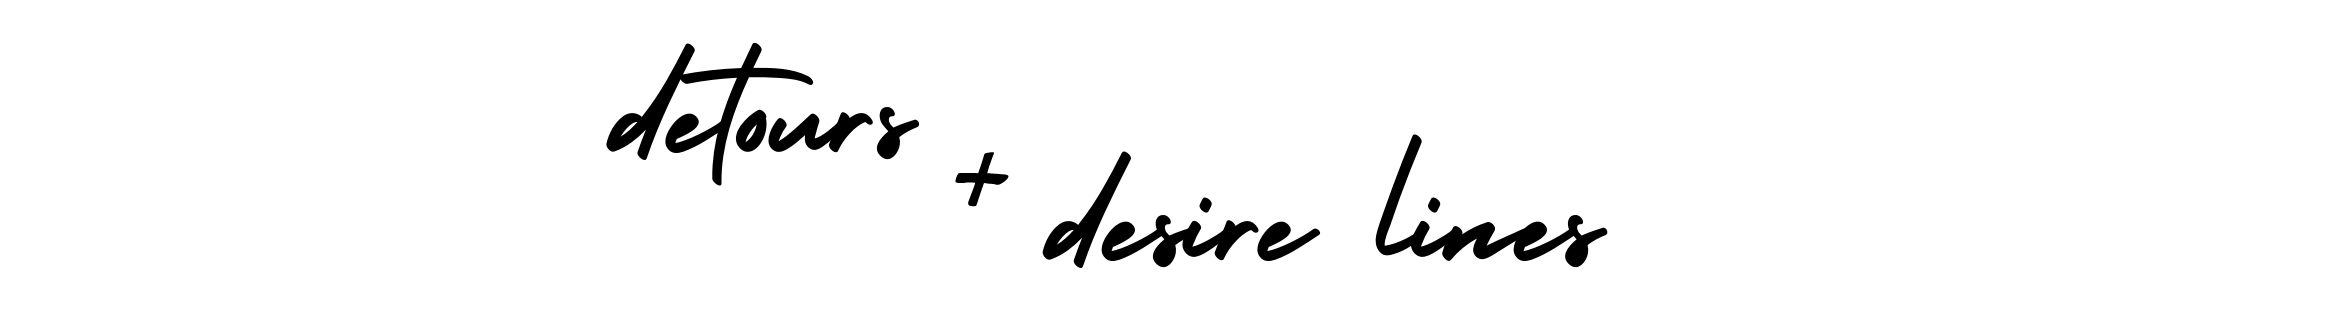 detours + desire lines